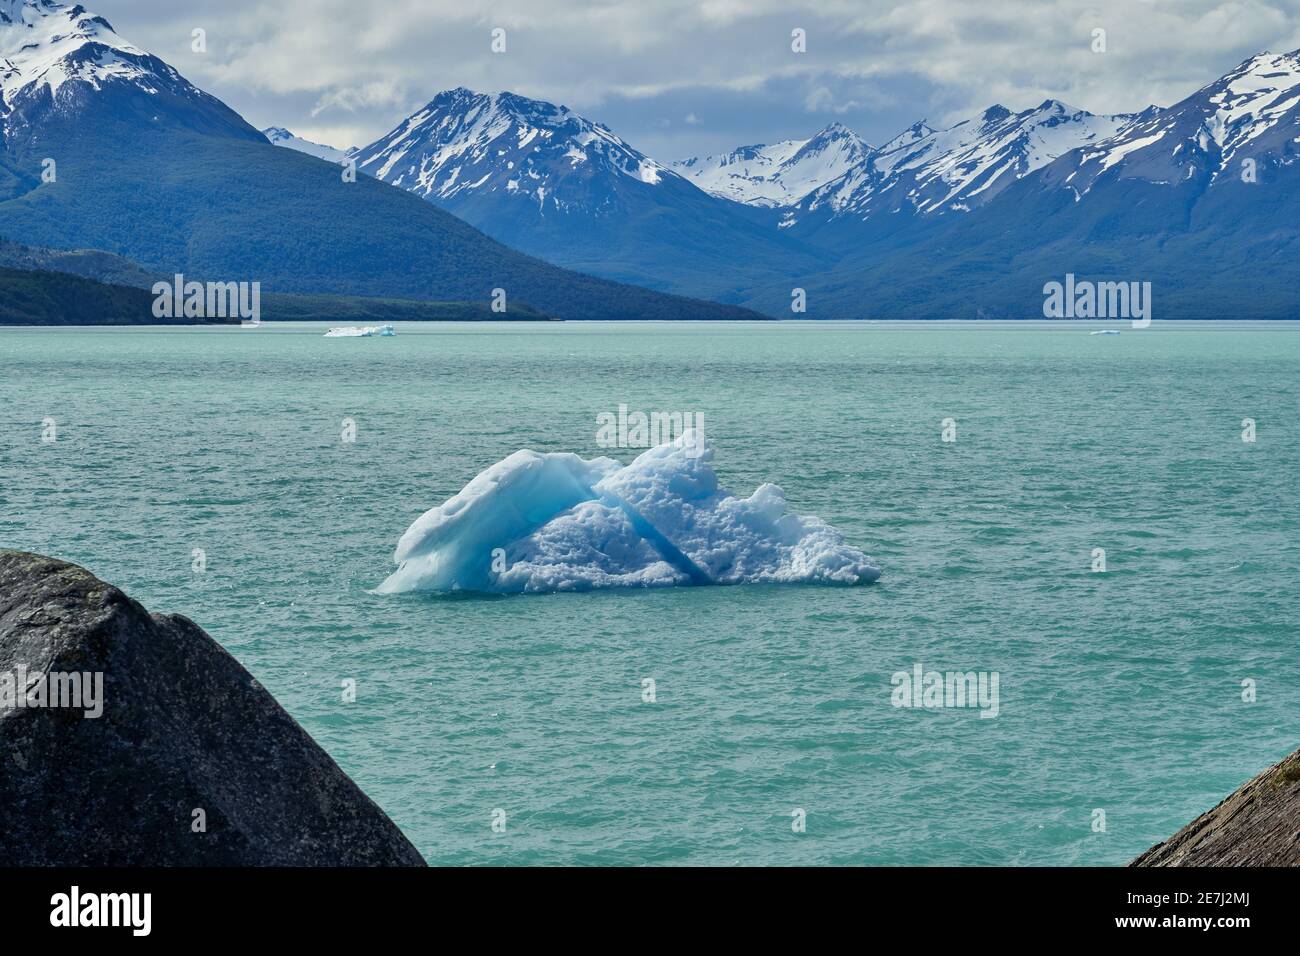 Blaues Eis des Perito Moreno Gletschers im Glaciers Nationalpark in Patagonien, Argentinien mit einem Eisberg auf dem türkisfarbenen Wasser des Lago Argentino in der fo Stockfoto